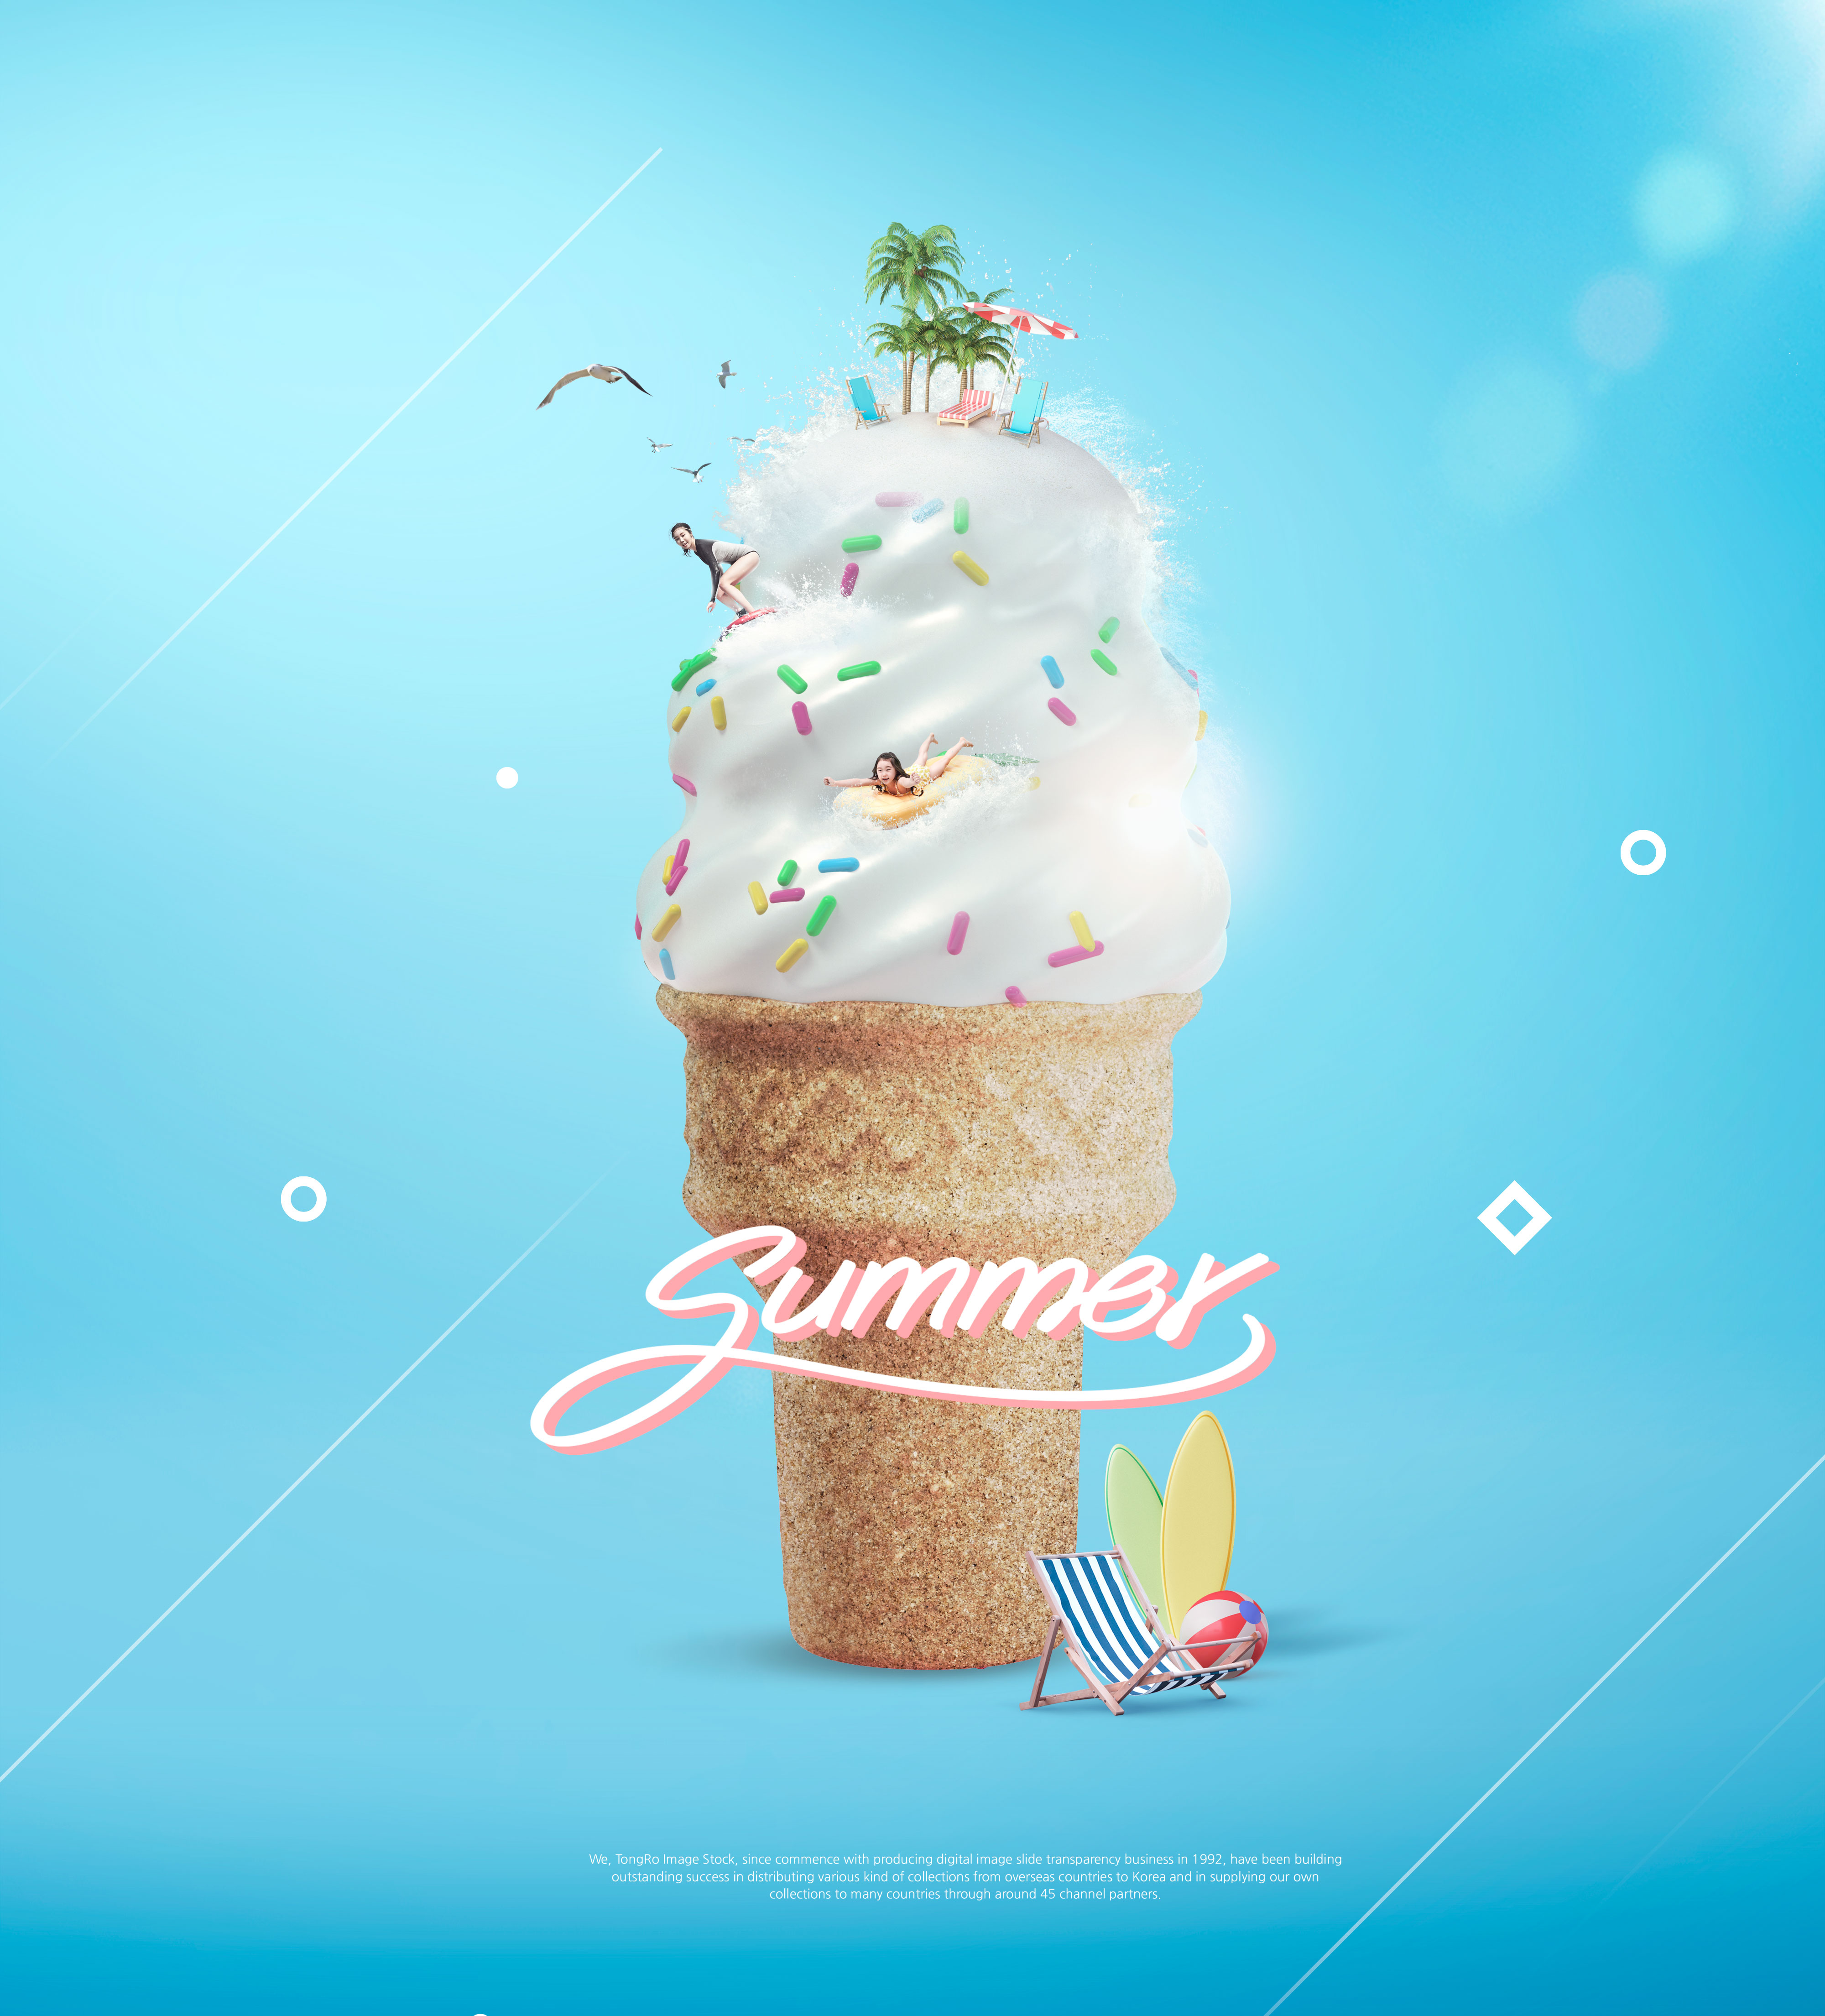 暑假旅行/夏季饮品促销广告活动海报设计套装插图(3)